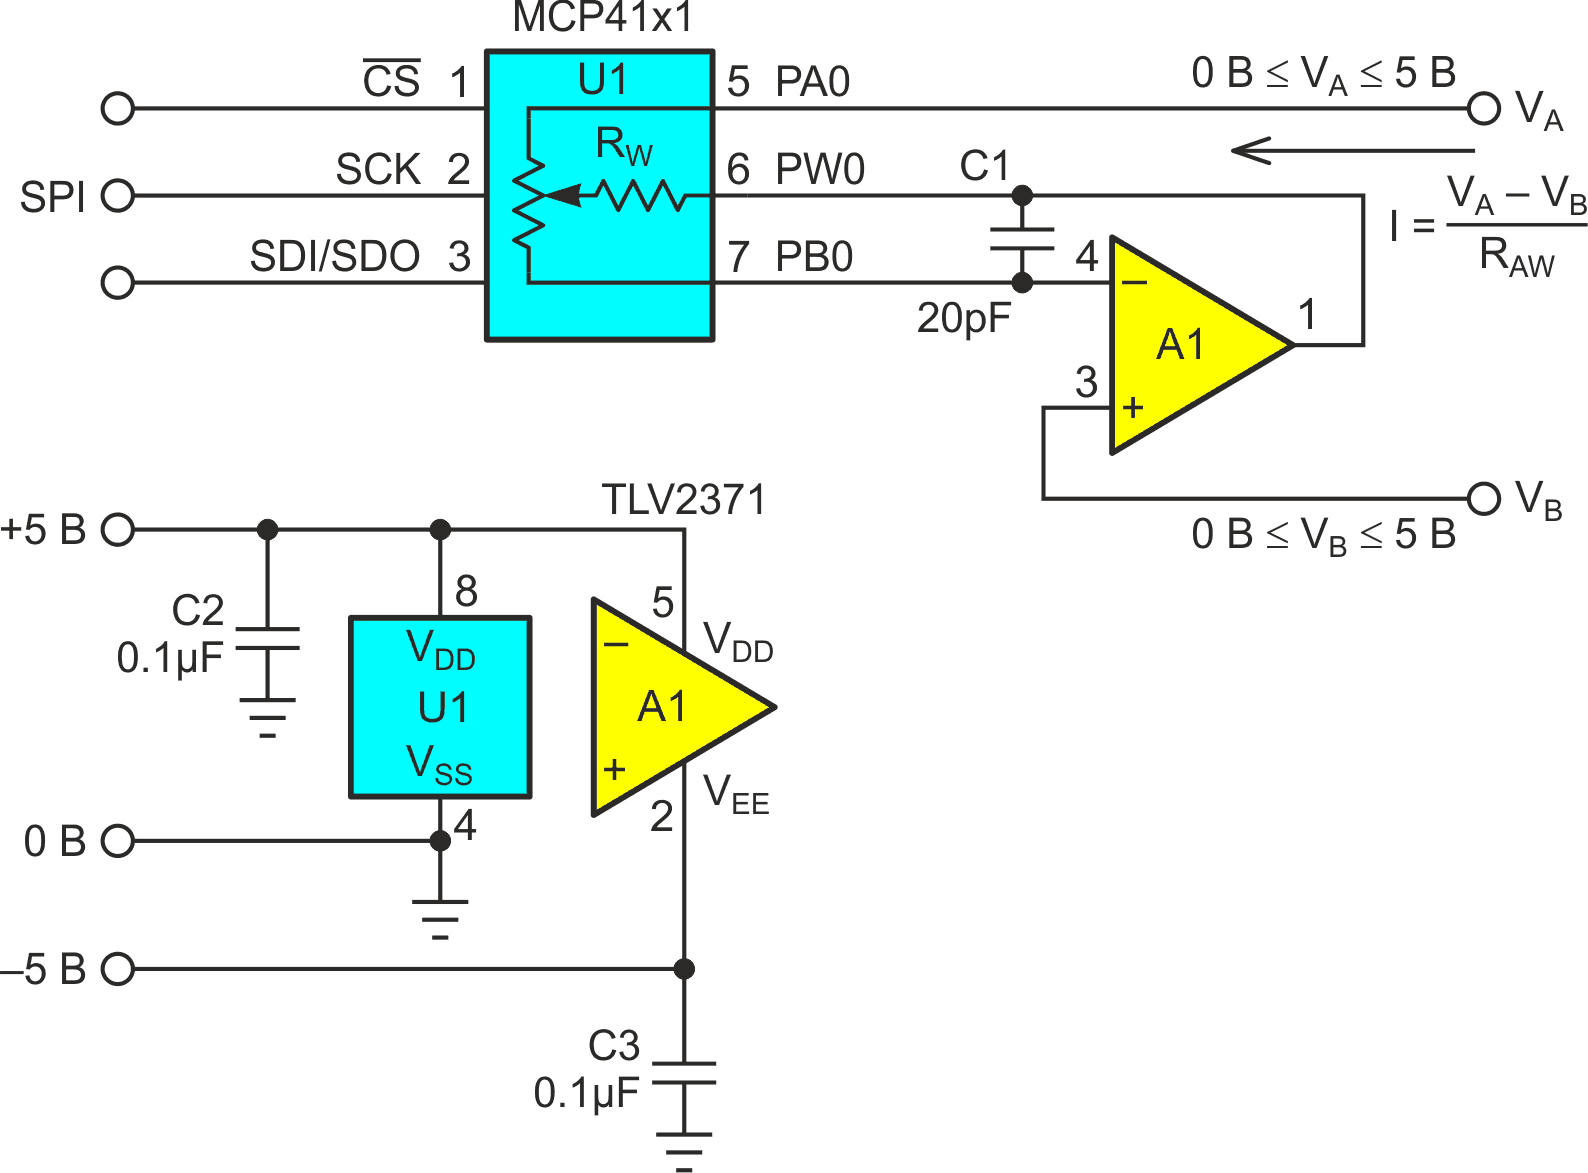 Операционный усилитель A1 активно управляет выводом PW0 движка цифрового потенциометра U1 и принудительно поддерживает равенство VPBO = VB, пропуская при этом незначительный ток через сопротивление RWB и устраняя таким образом влияние RW.